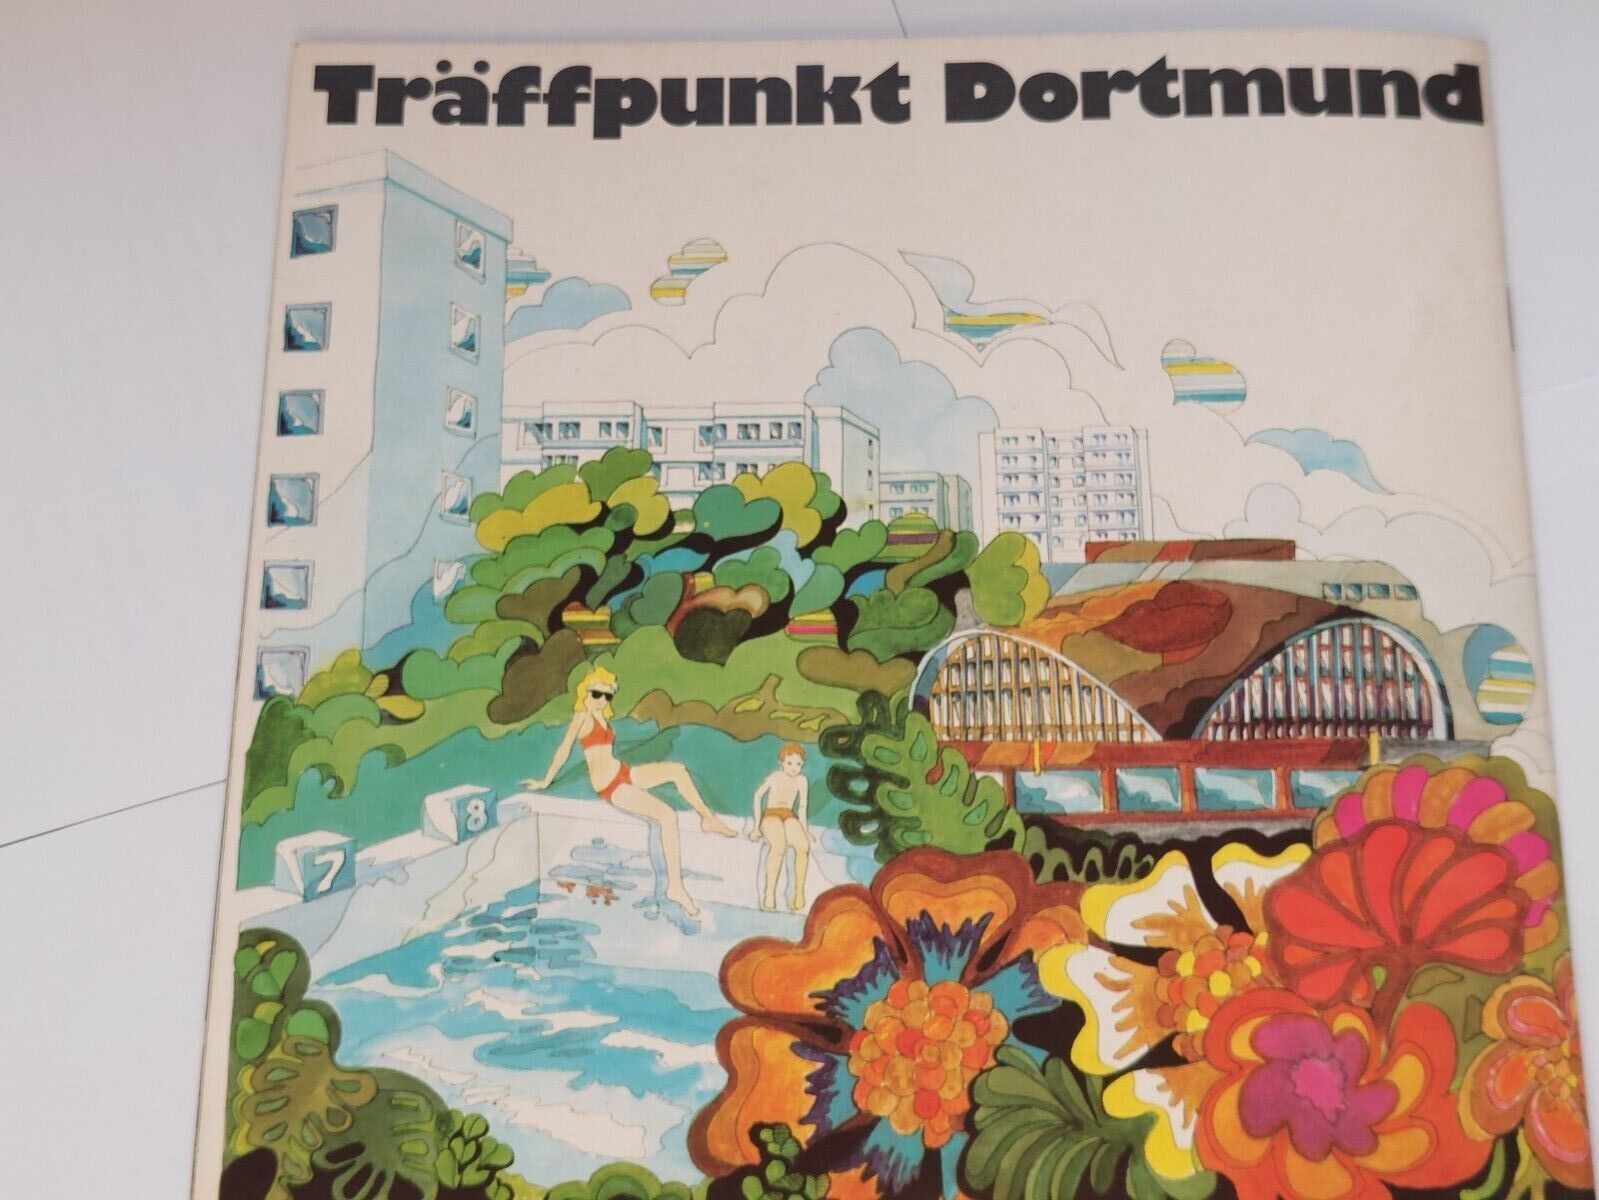  Dortmund Germany vintage travel brochure/ vintage booklet/ Traffpunkt Dortmund